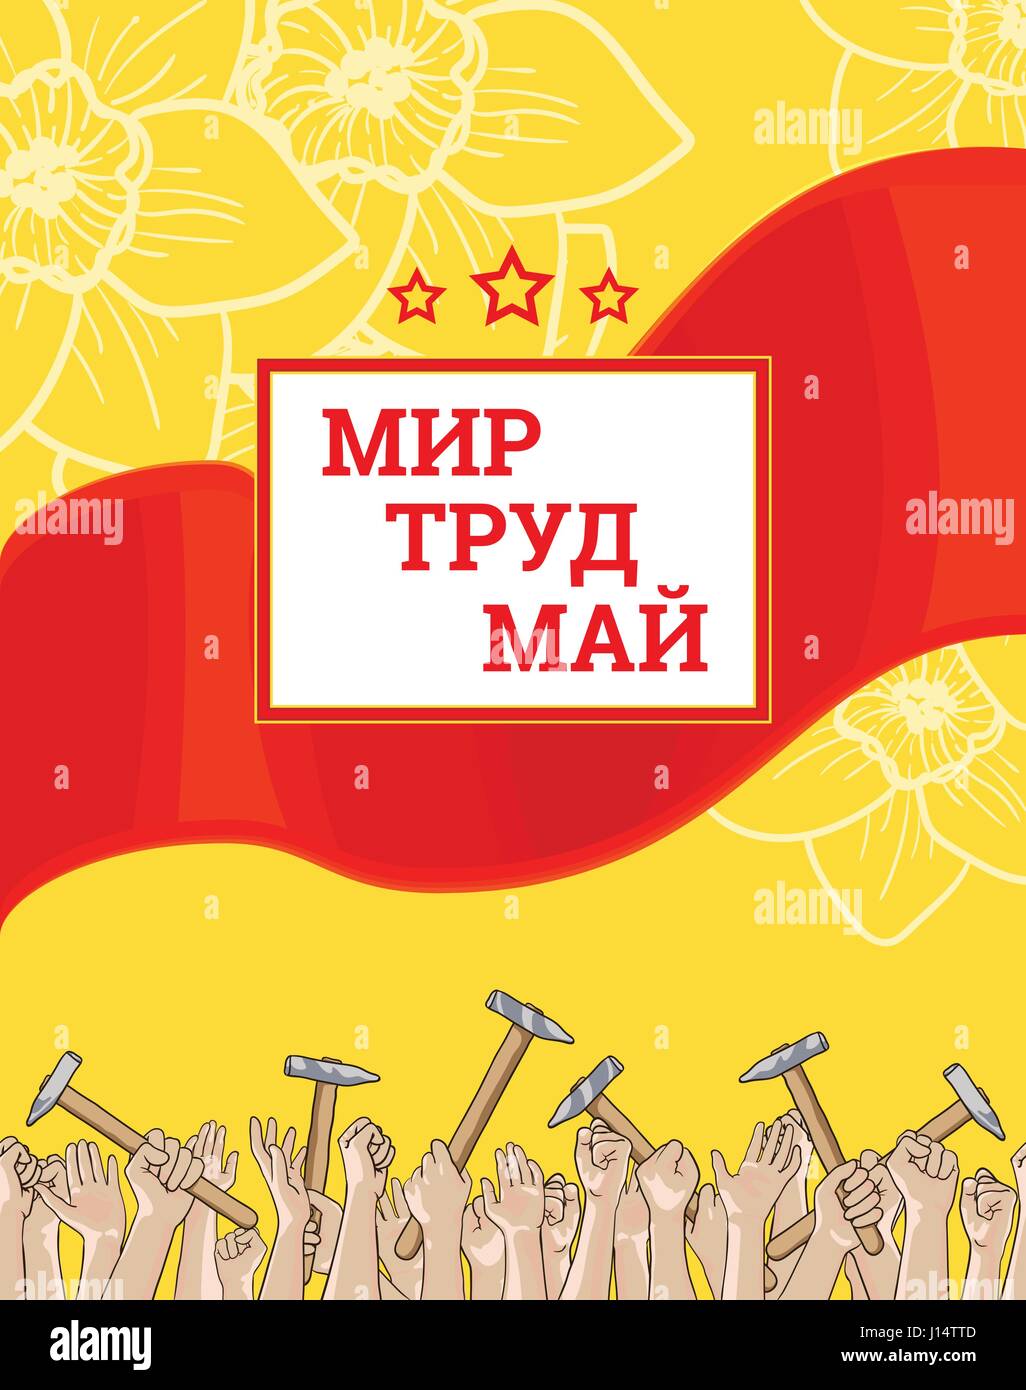 Journée internationale des travailleurs, le 1er mai. Texte russe signifie la paix peut du travail. L'affiche de la main pour l'impression. Foule des travailleurs avec leurs bras levés et soviétique Illustration de Vecteur